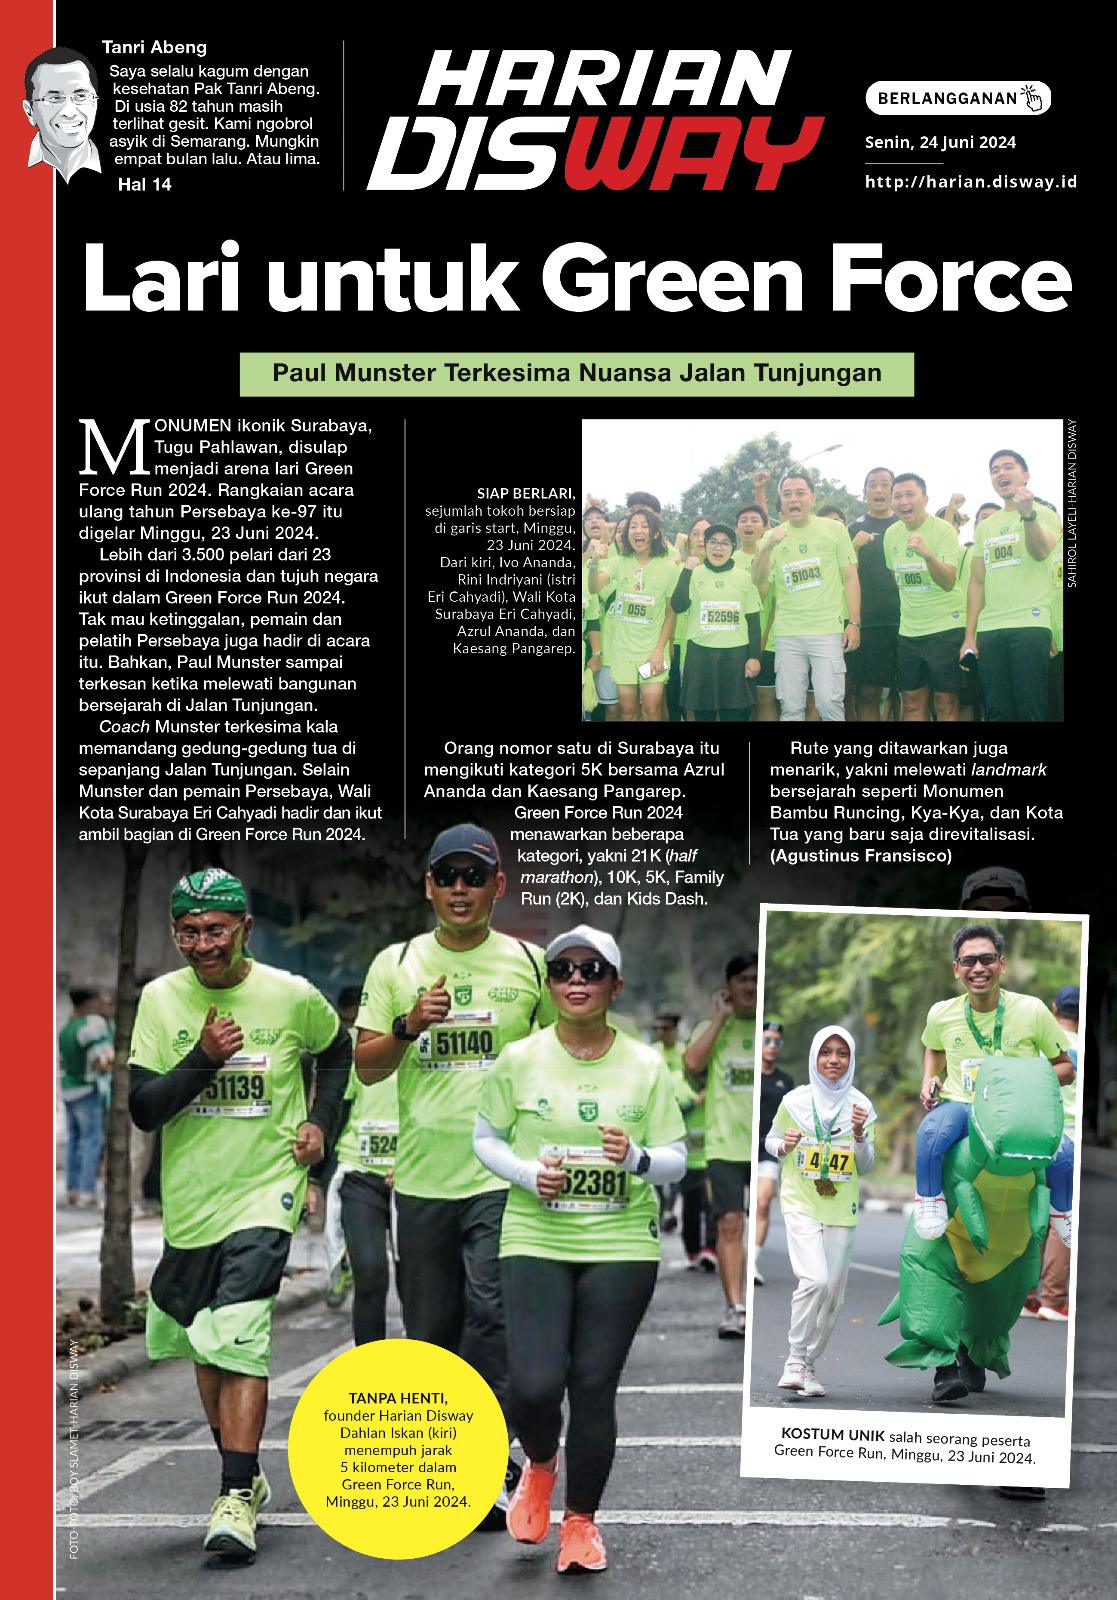 Lari untuk Green Force